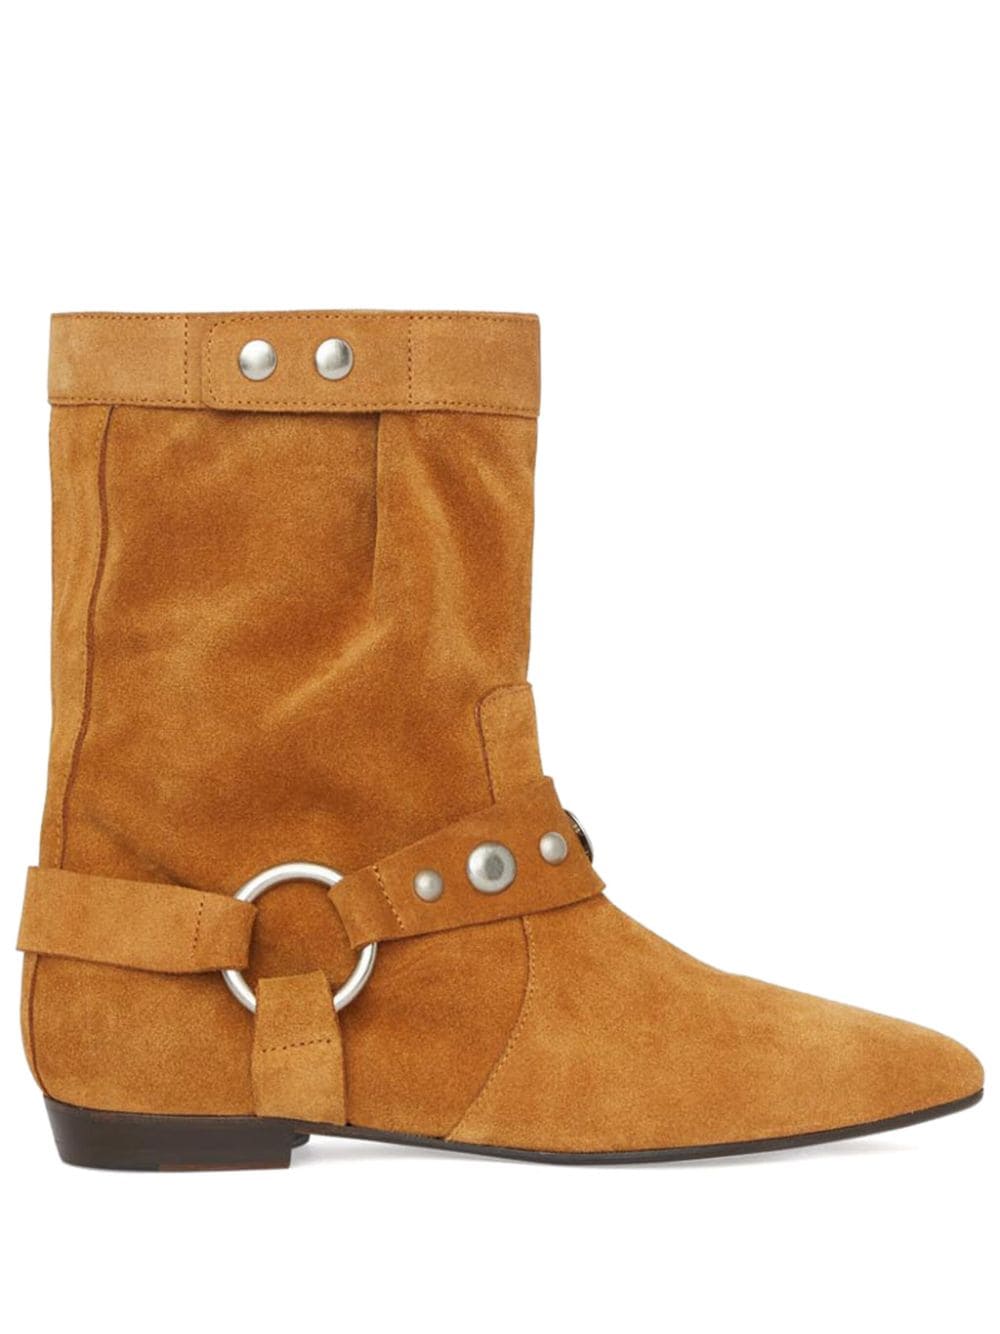 ISABEL MARANT stud-embellished suede boots Brown